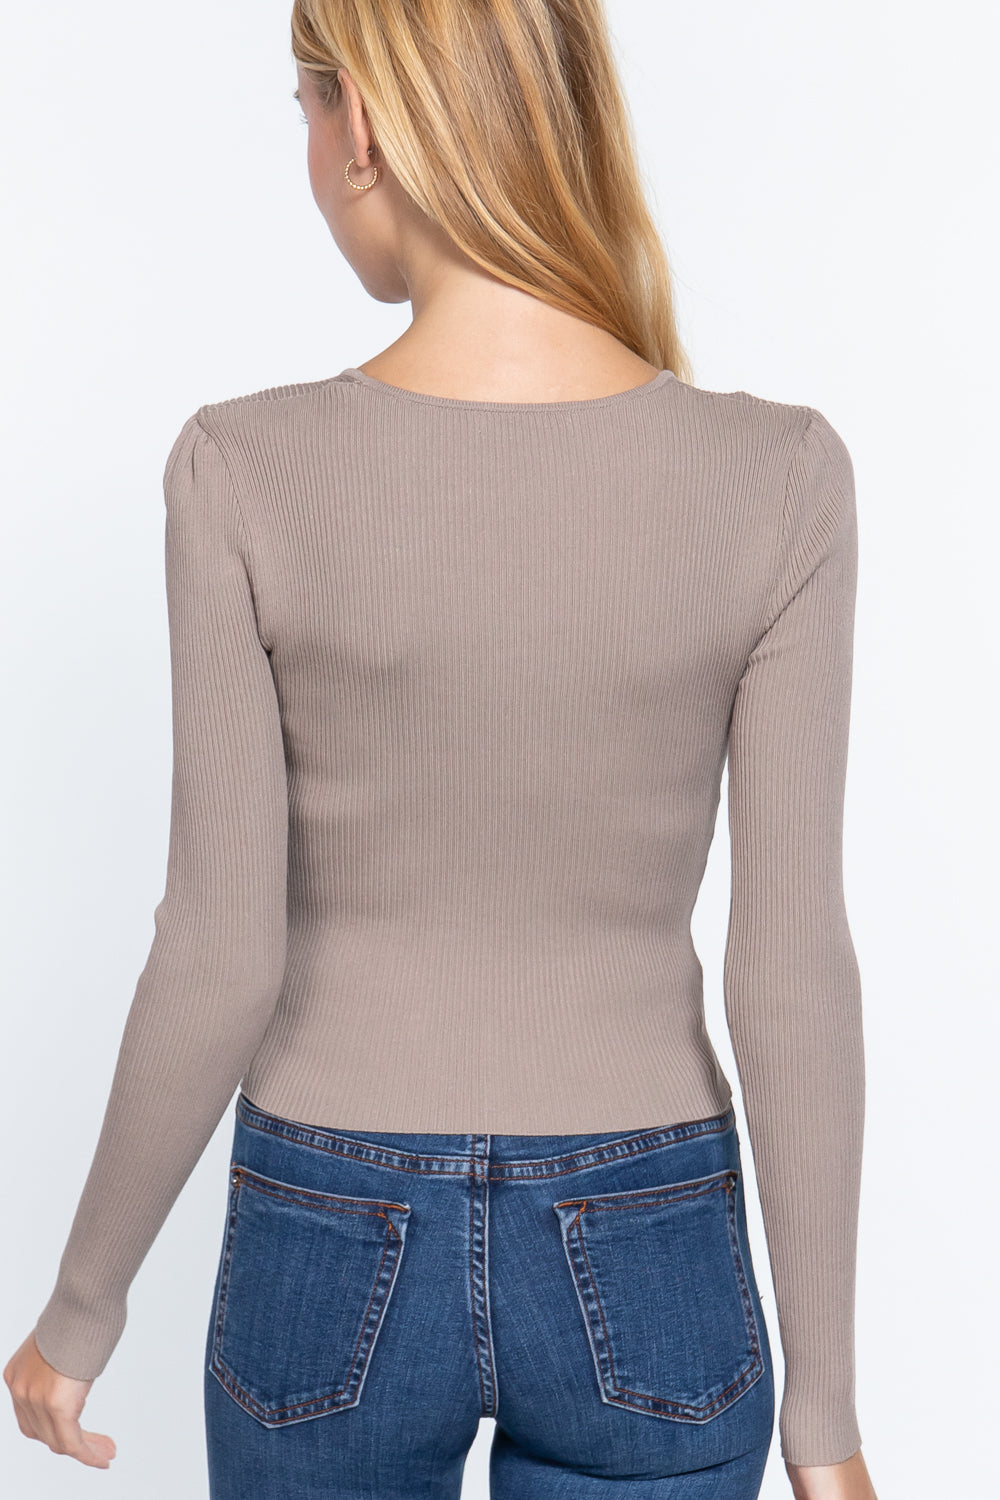 Shirring Sweetheart Neck Sweater - Tigbul's Fashion